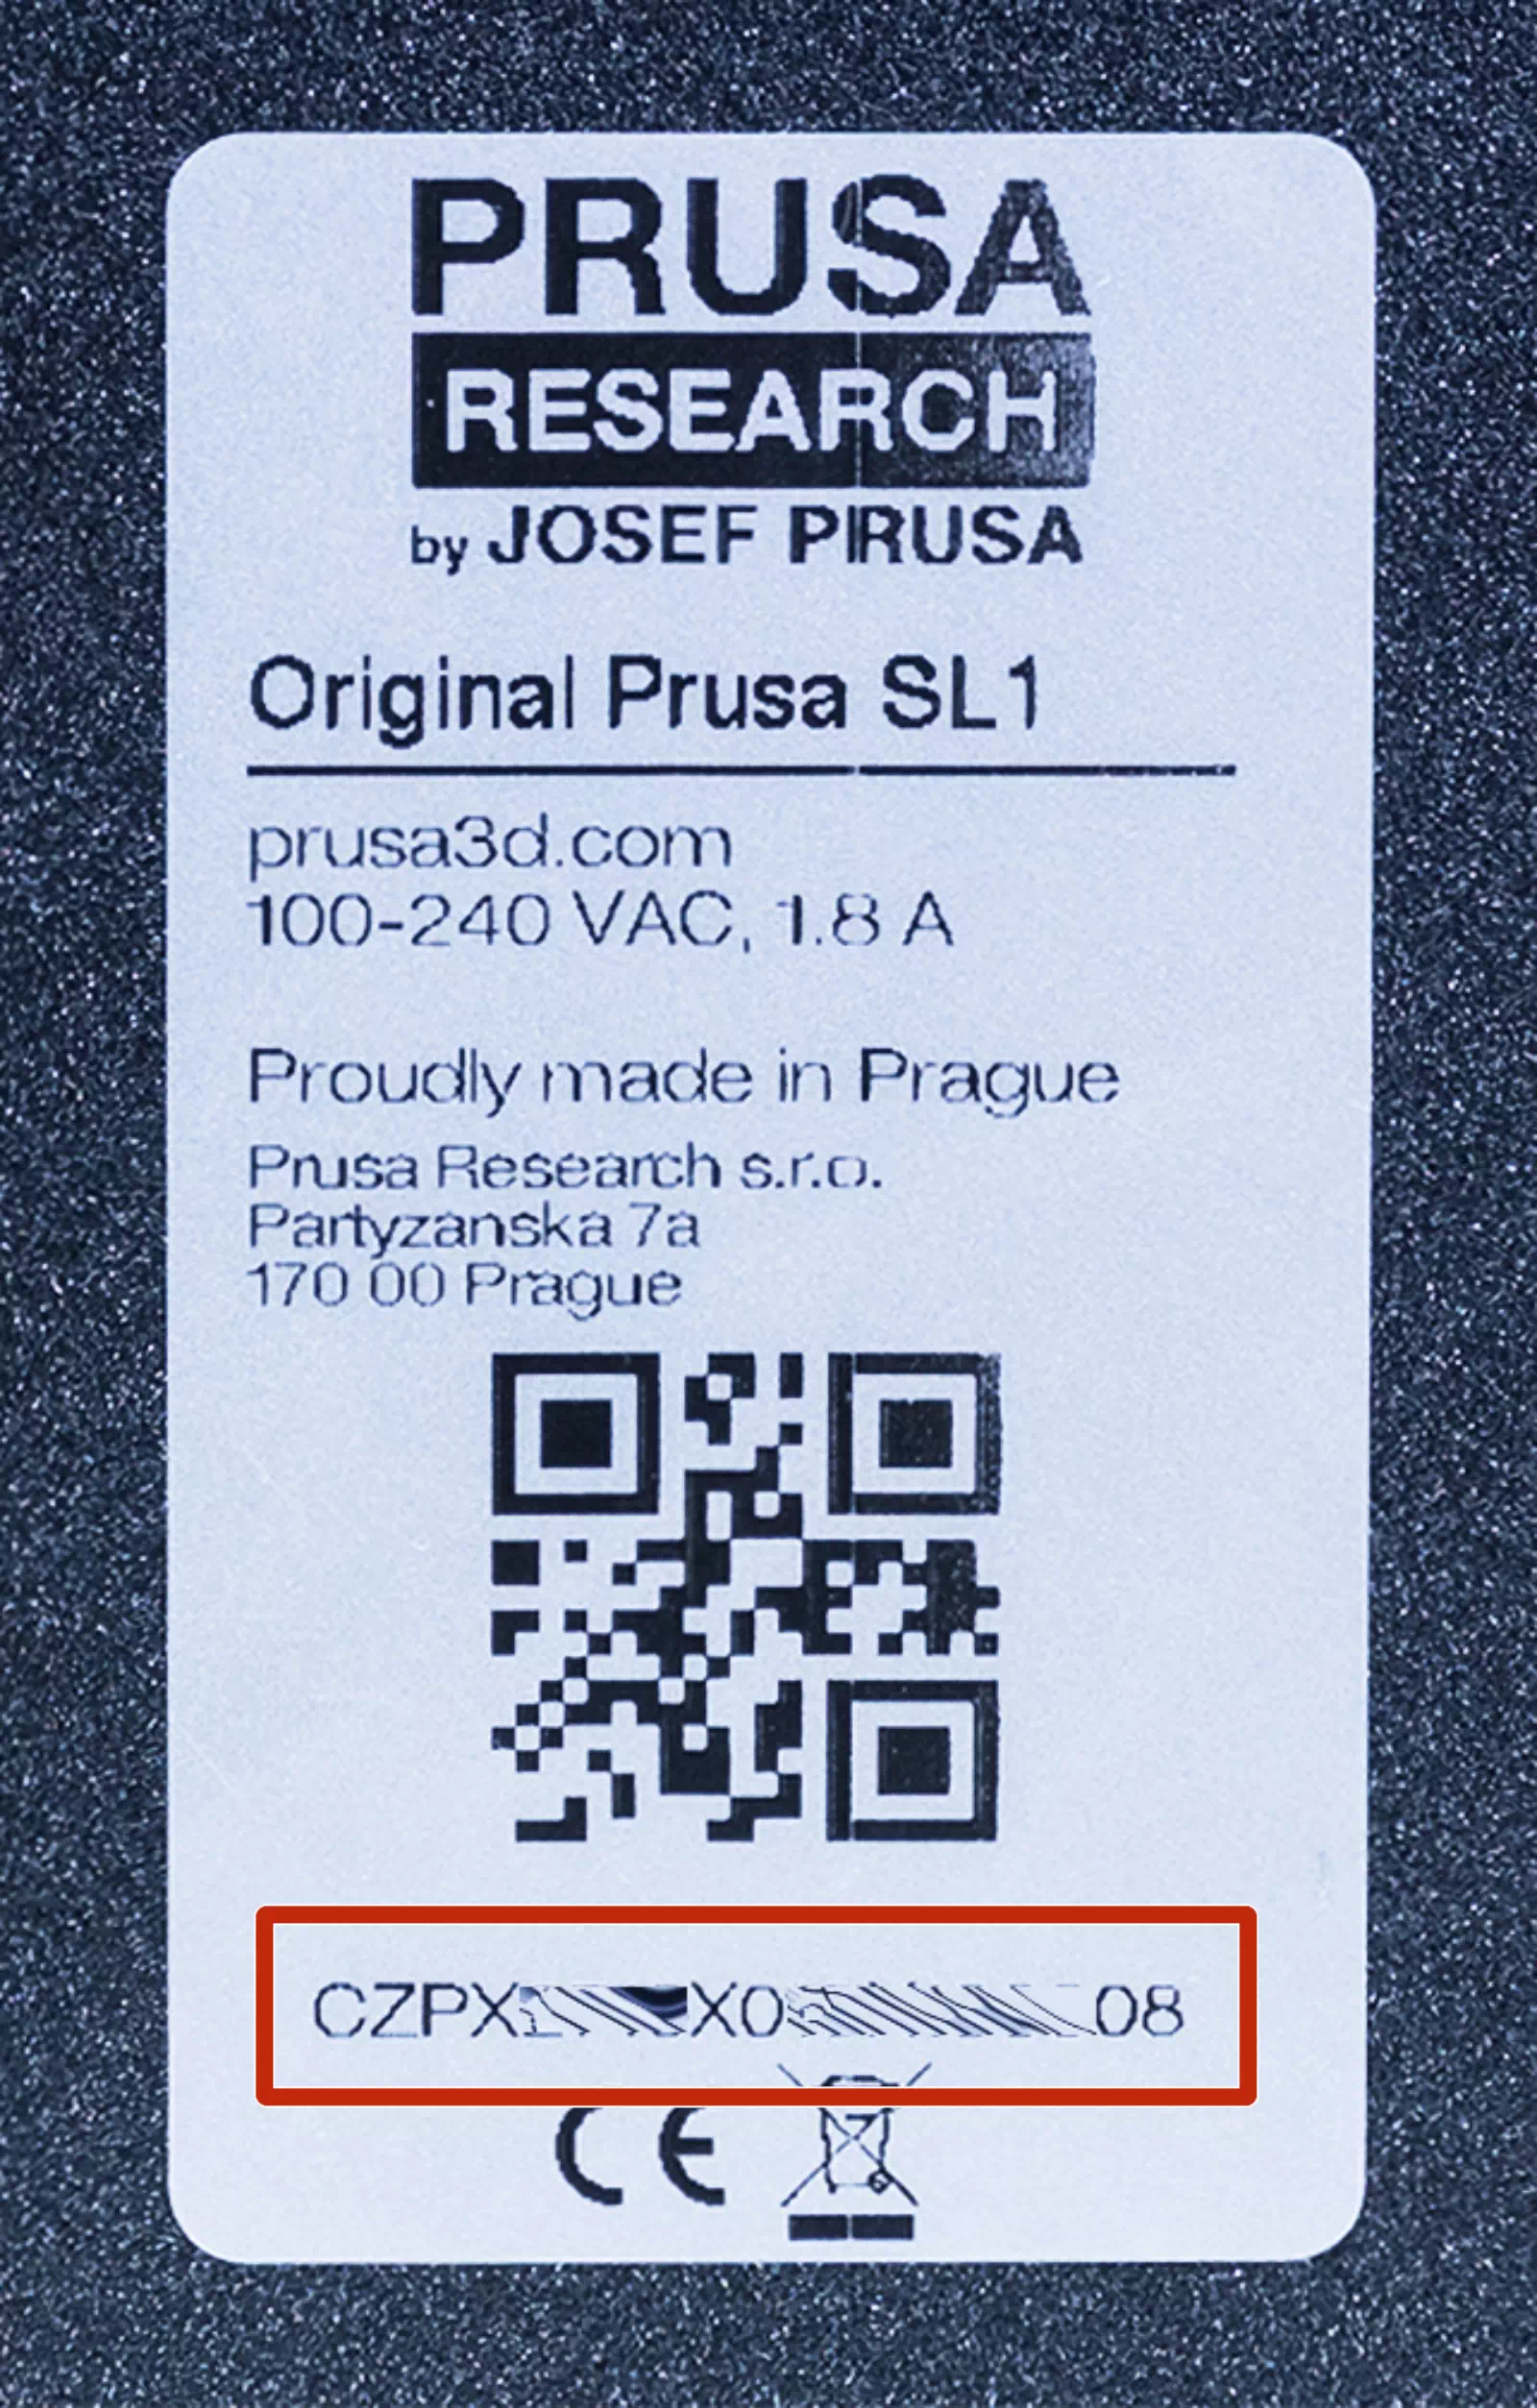 Original Prusa Serial Number